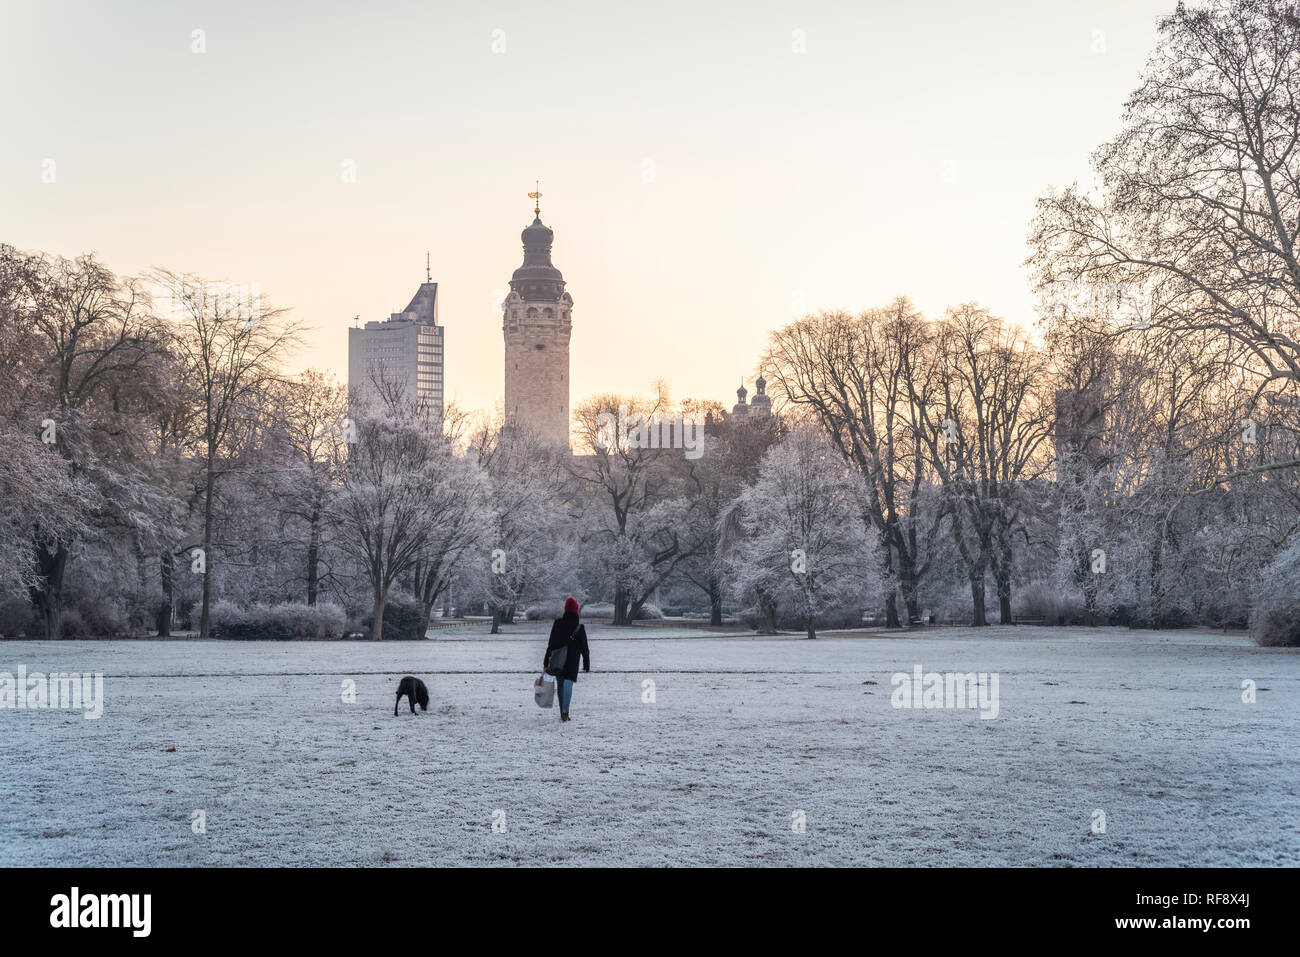 Leipzig im Frost, Johannapark, Spaziergängerin mit hund mit Blick zum Neuen Rathaus und zum City-Hochhaus Foto Stock